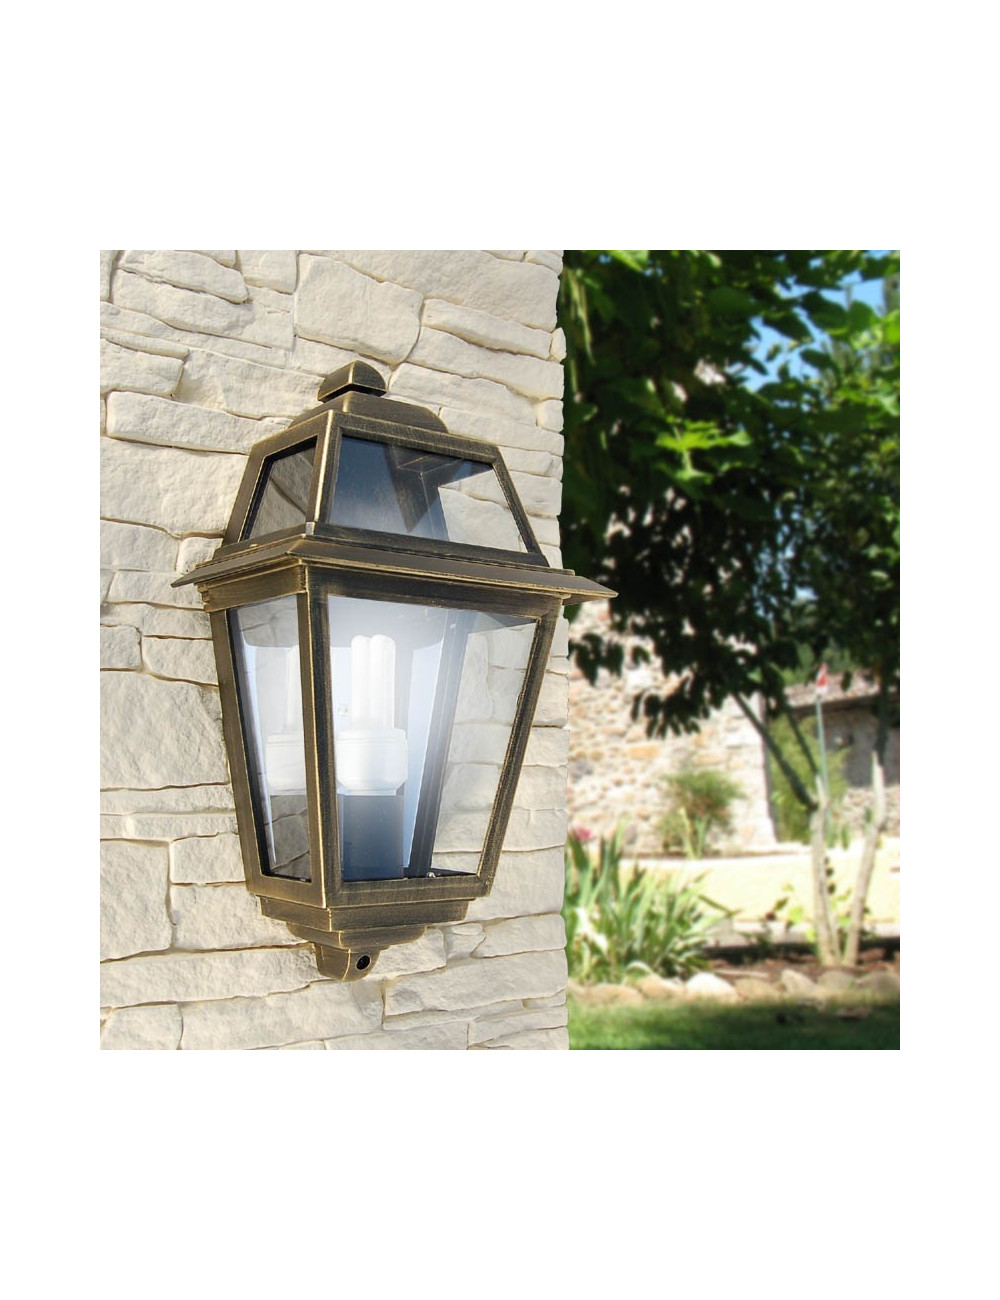 ARTEMIDE Classic wall-mounted half lantern outdoor lighting garden